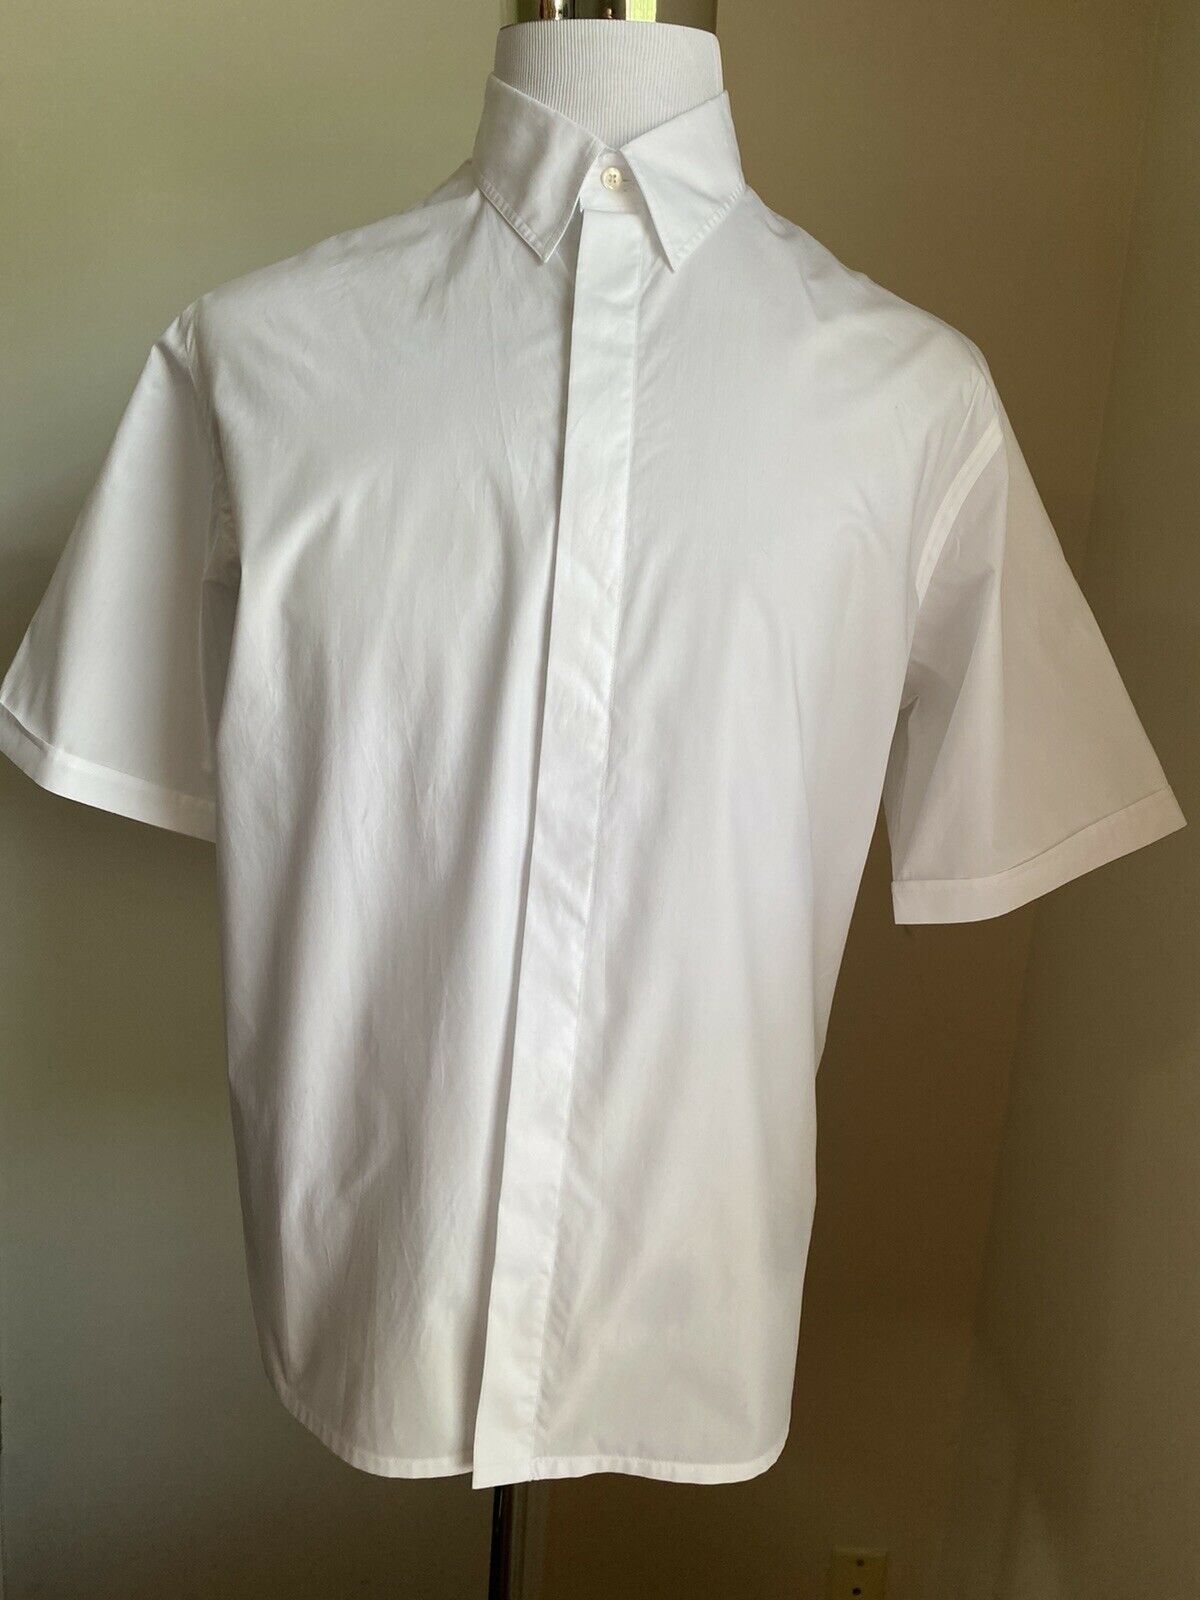 Neu $550 Fendi Herren-Hemd mit festem, verstecktem Knopf und spitzem Kragen, Weiß, XL (42 Eu)